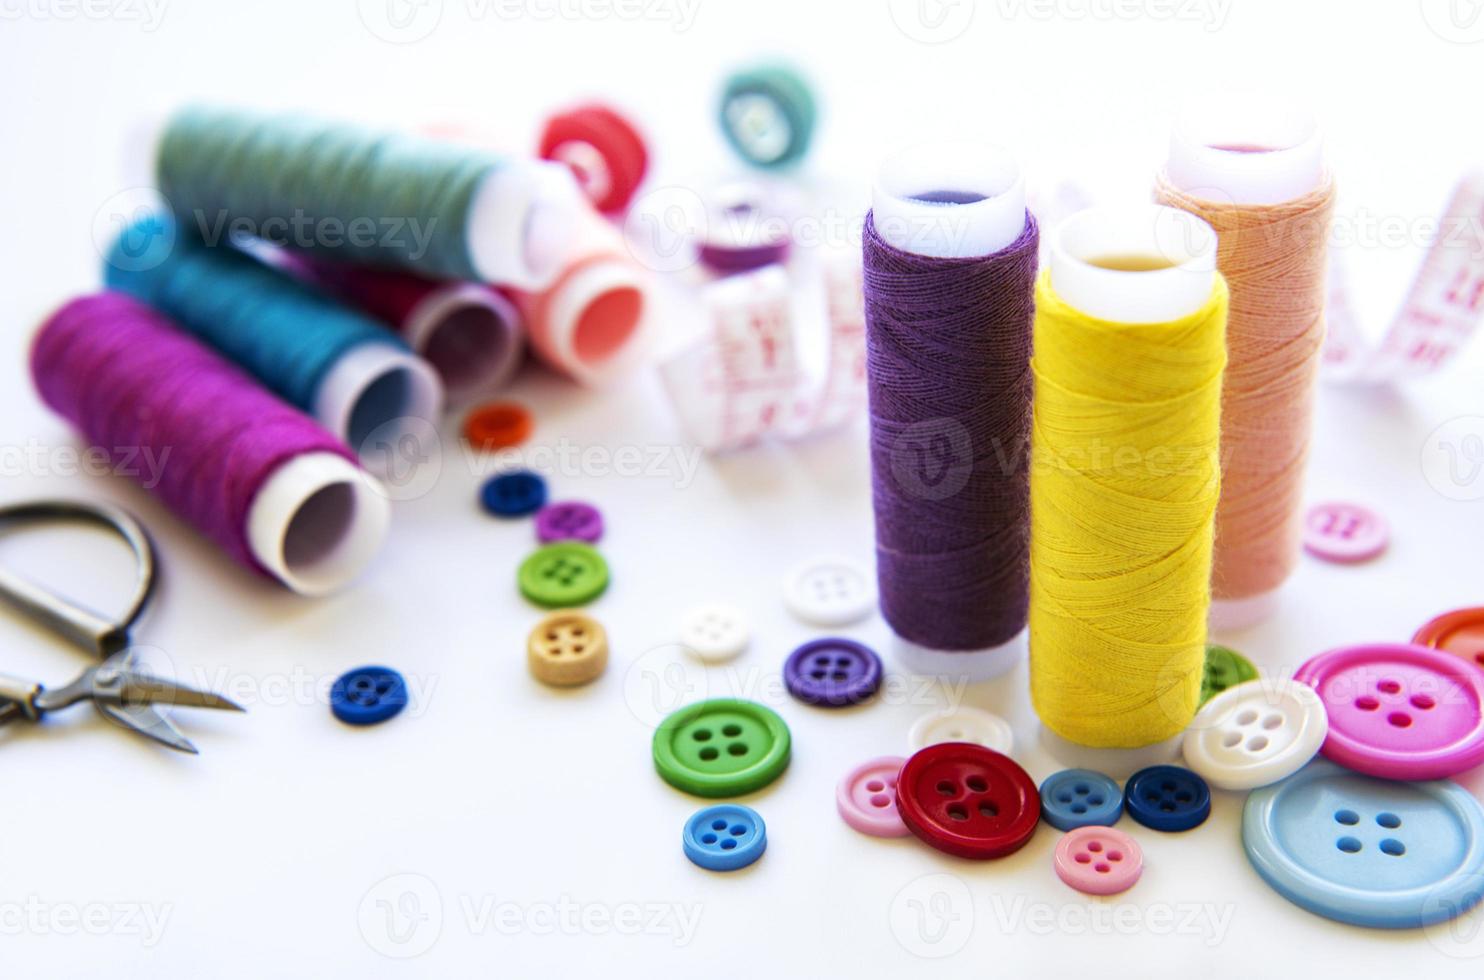 hilos de colores y accesorios de costura foto